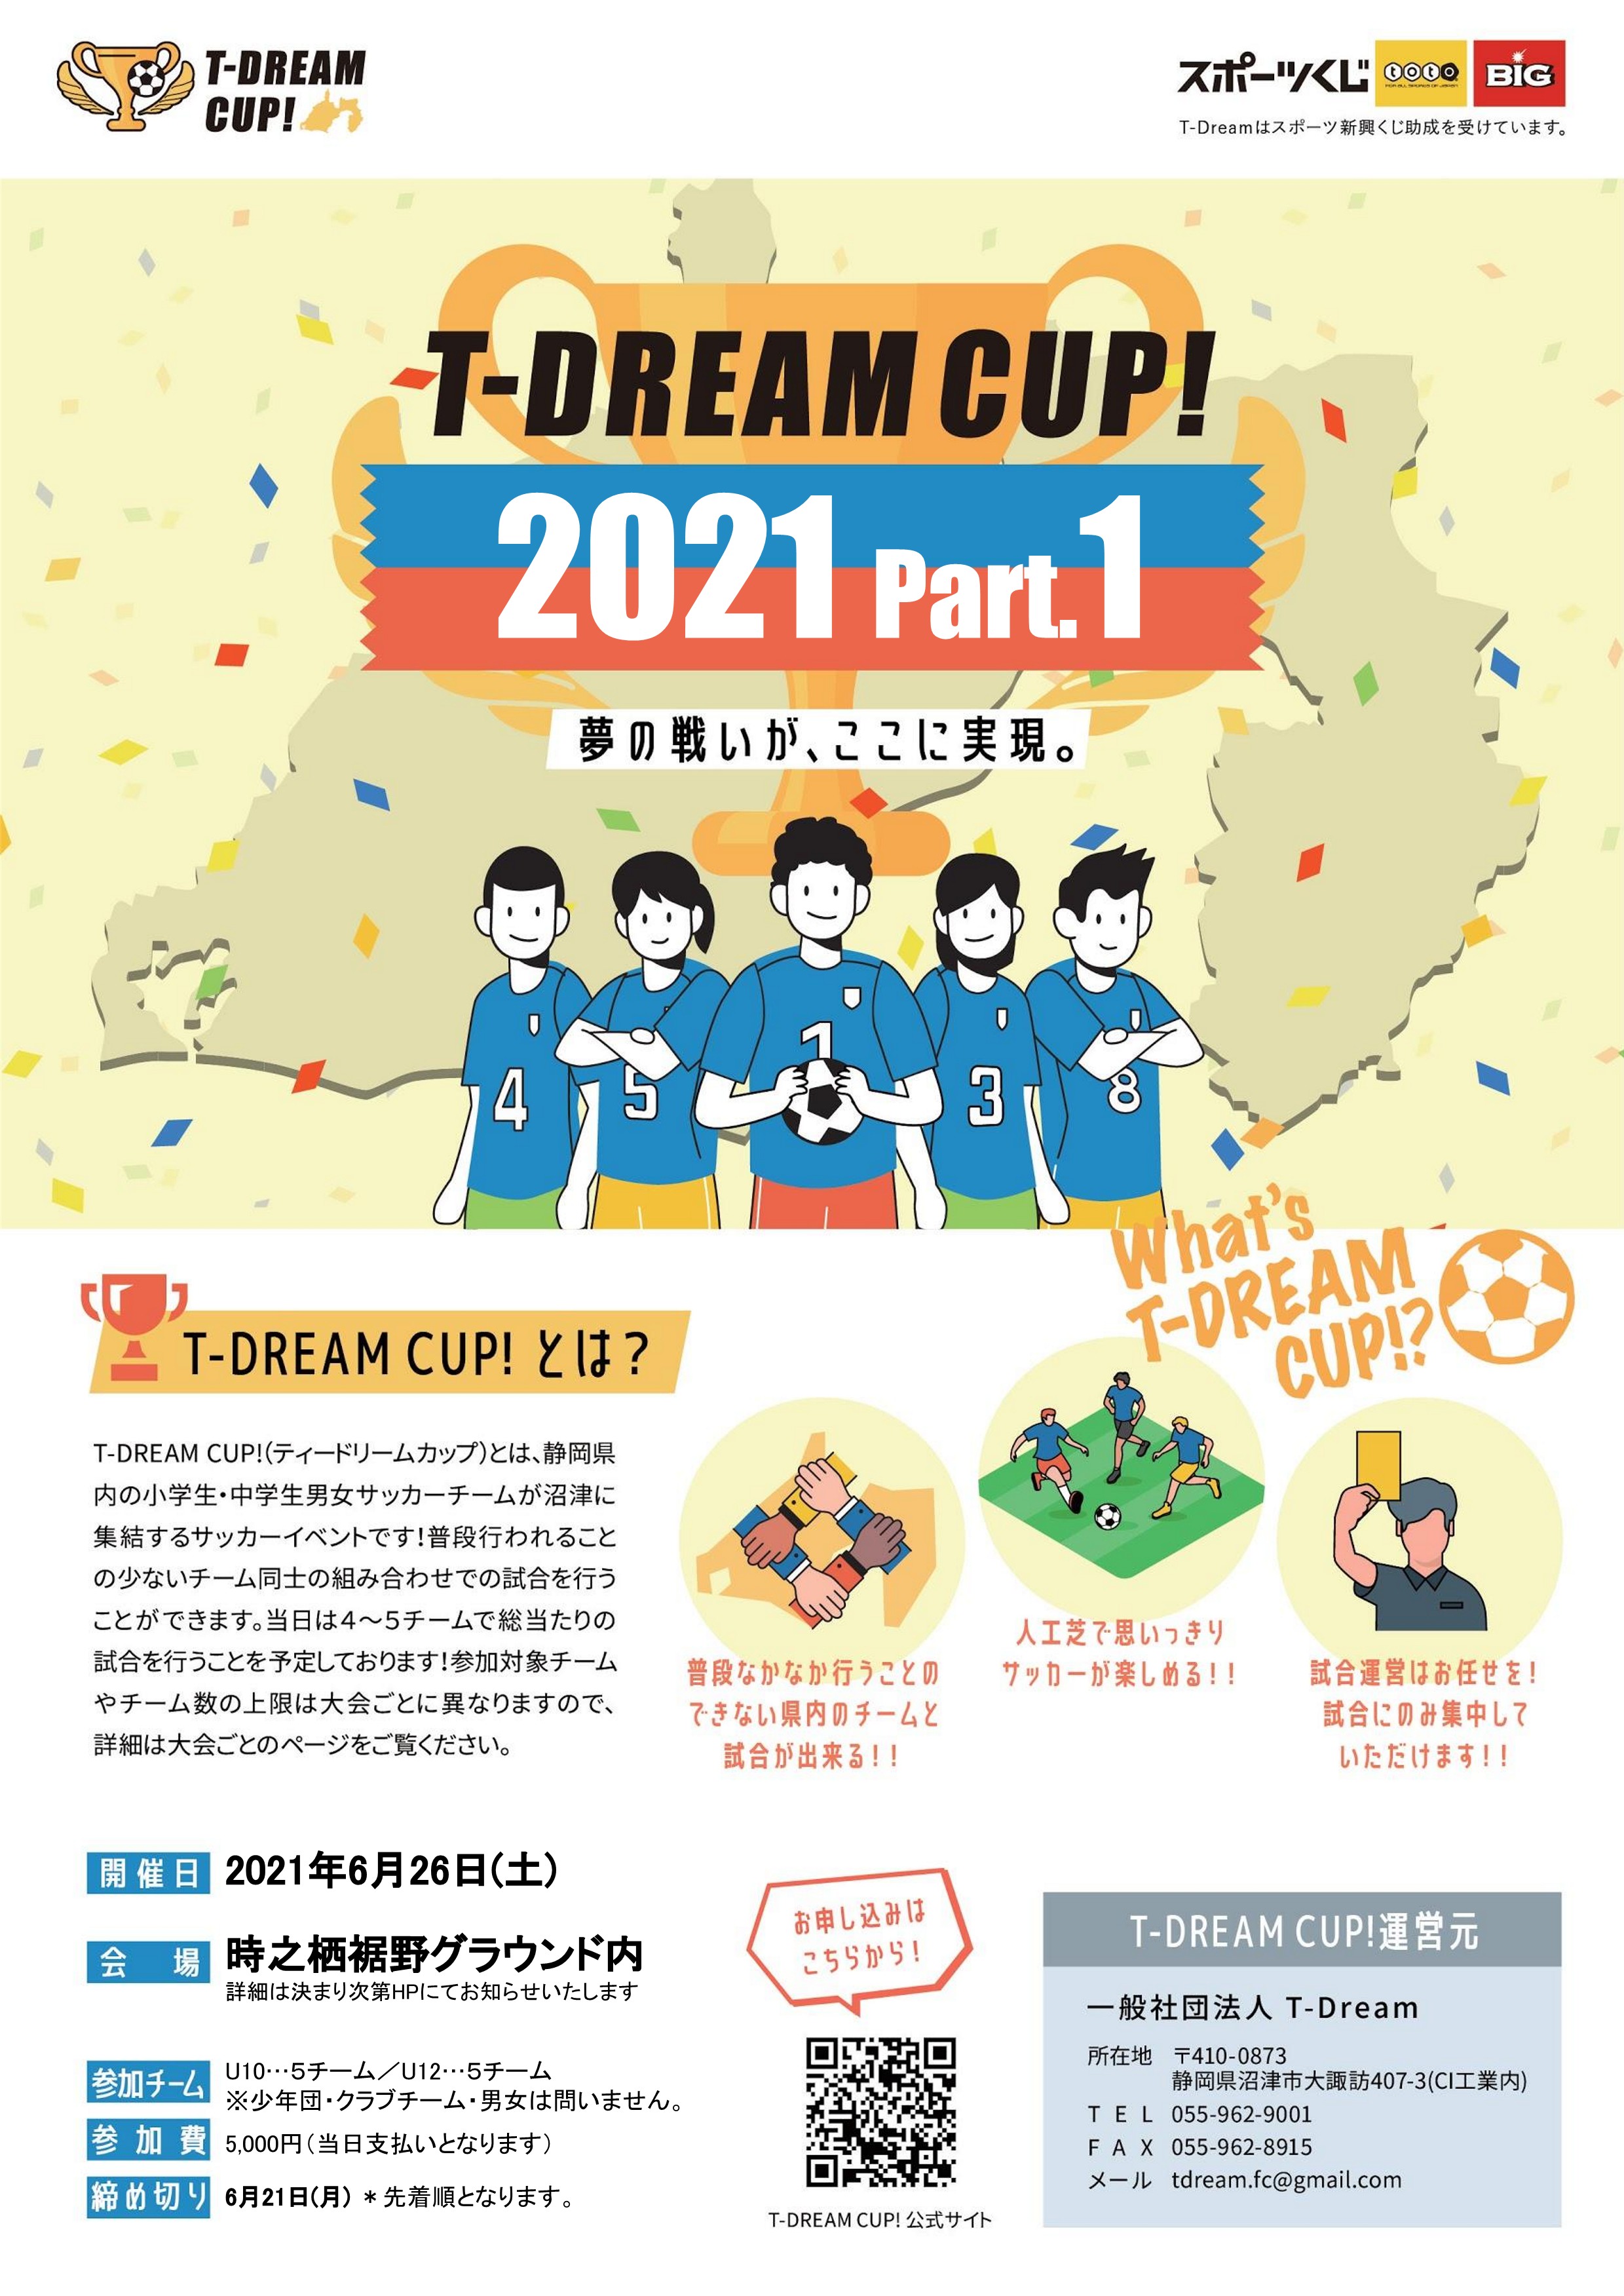 チラシ①T-DREAM+CUP!